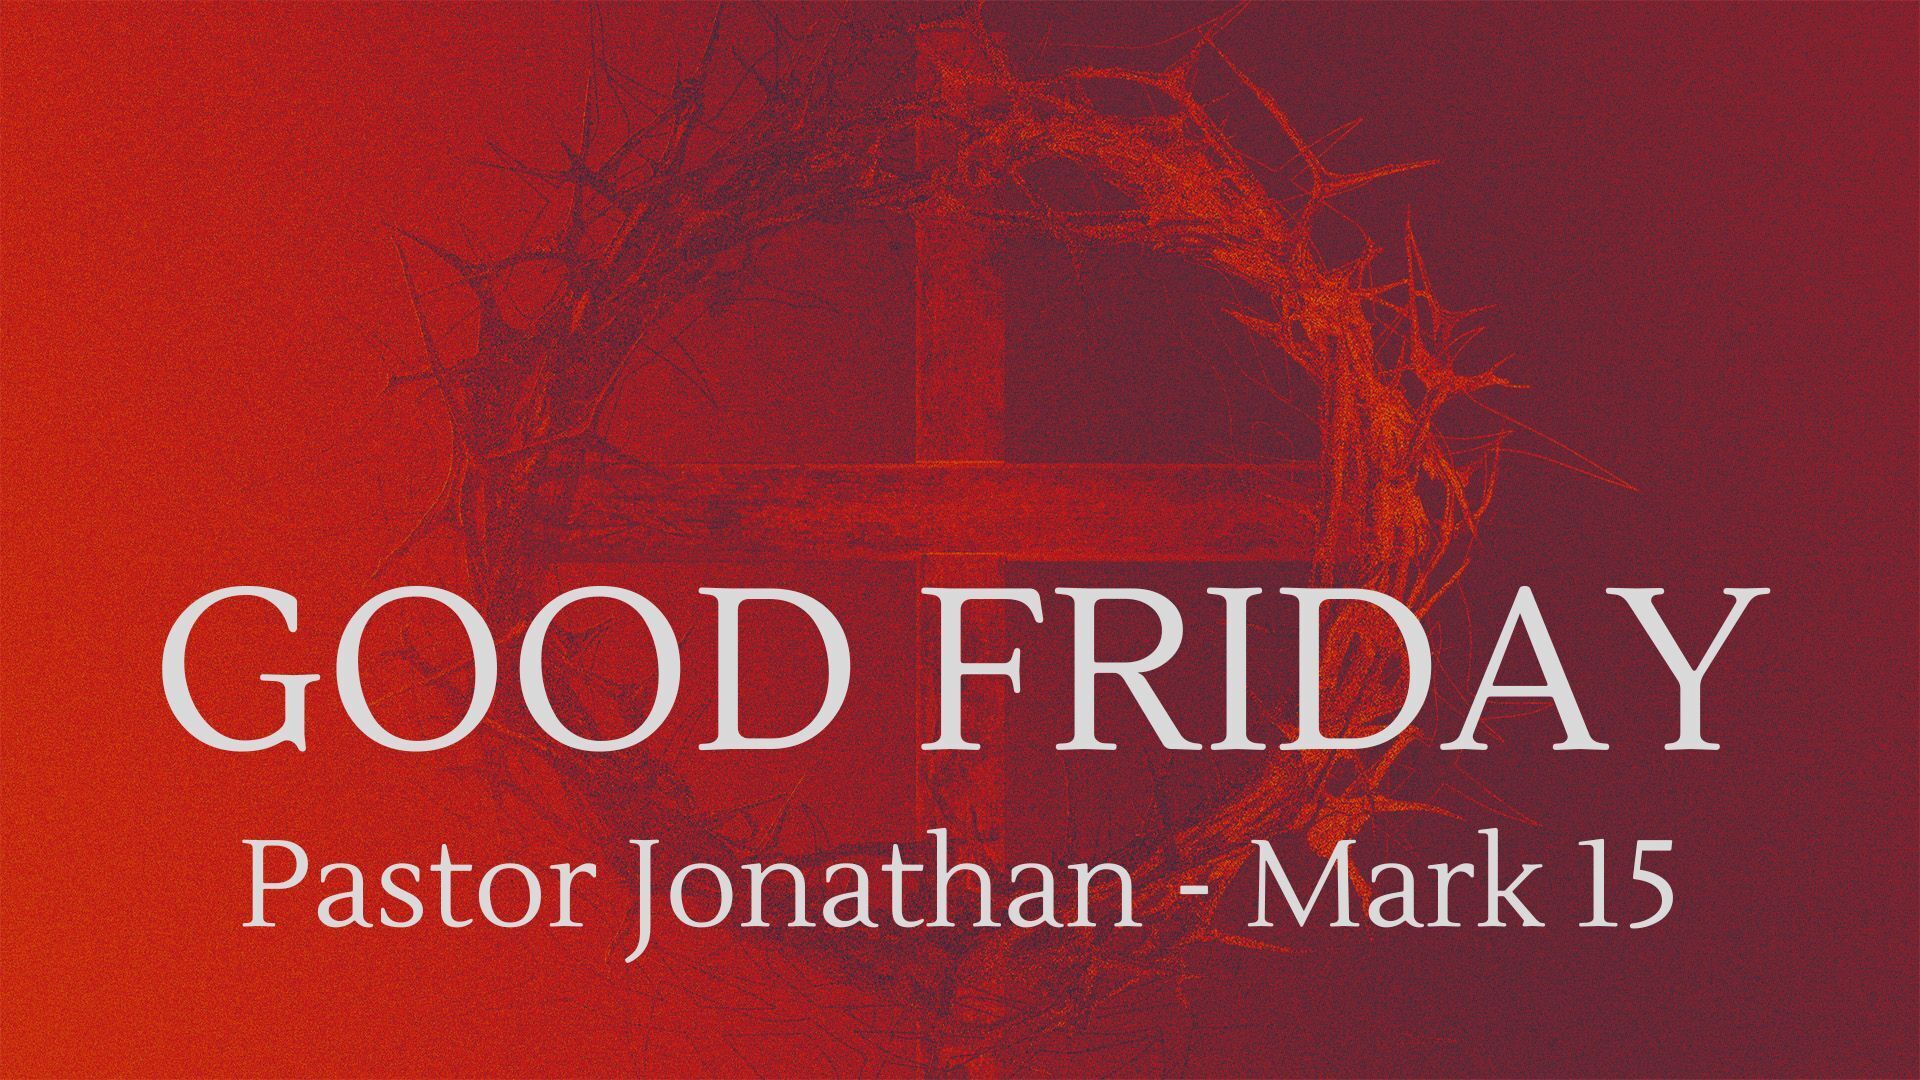 Good Friday - Pastor Jonathan